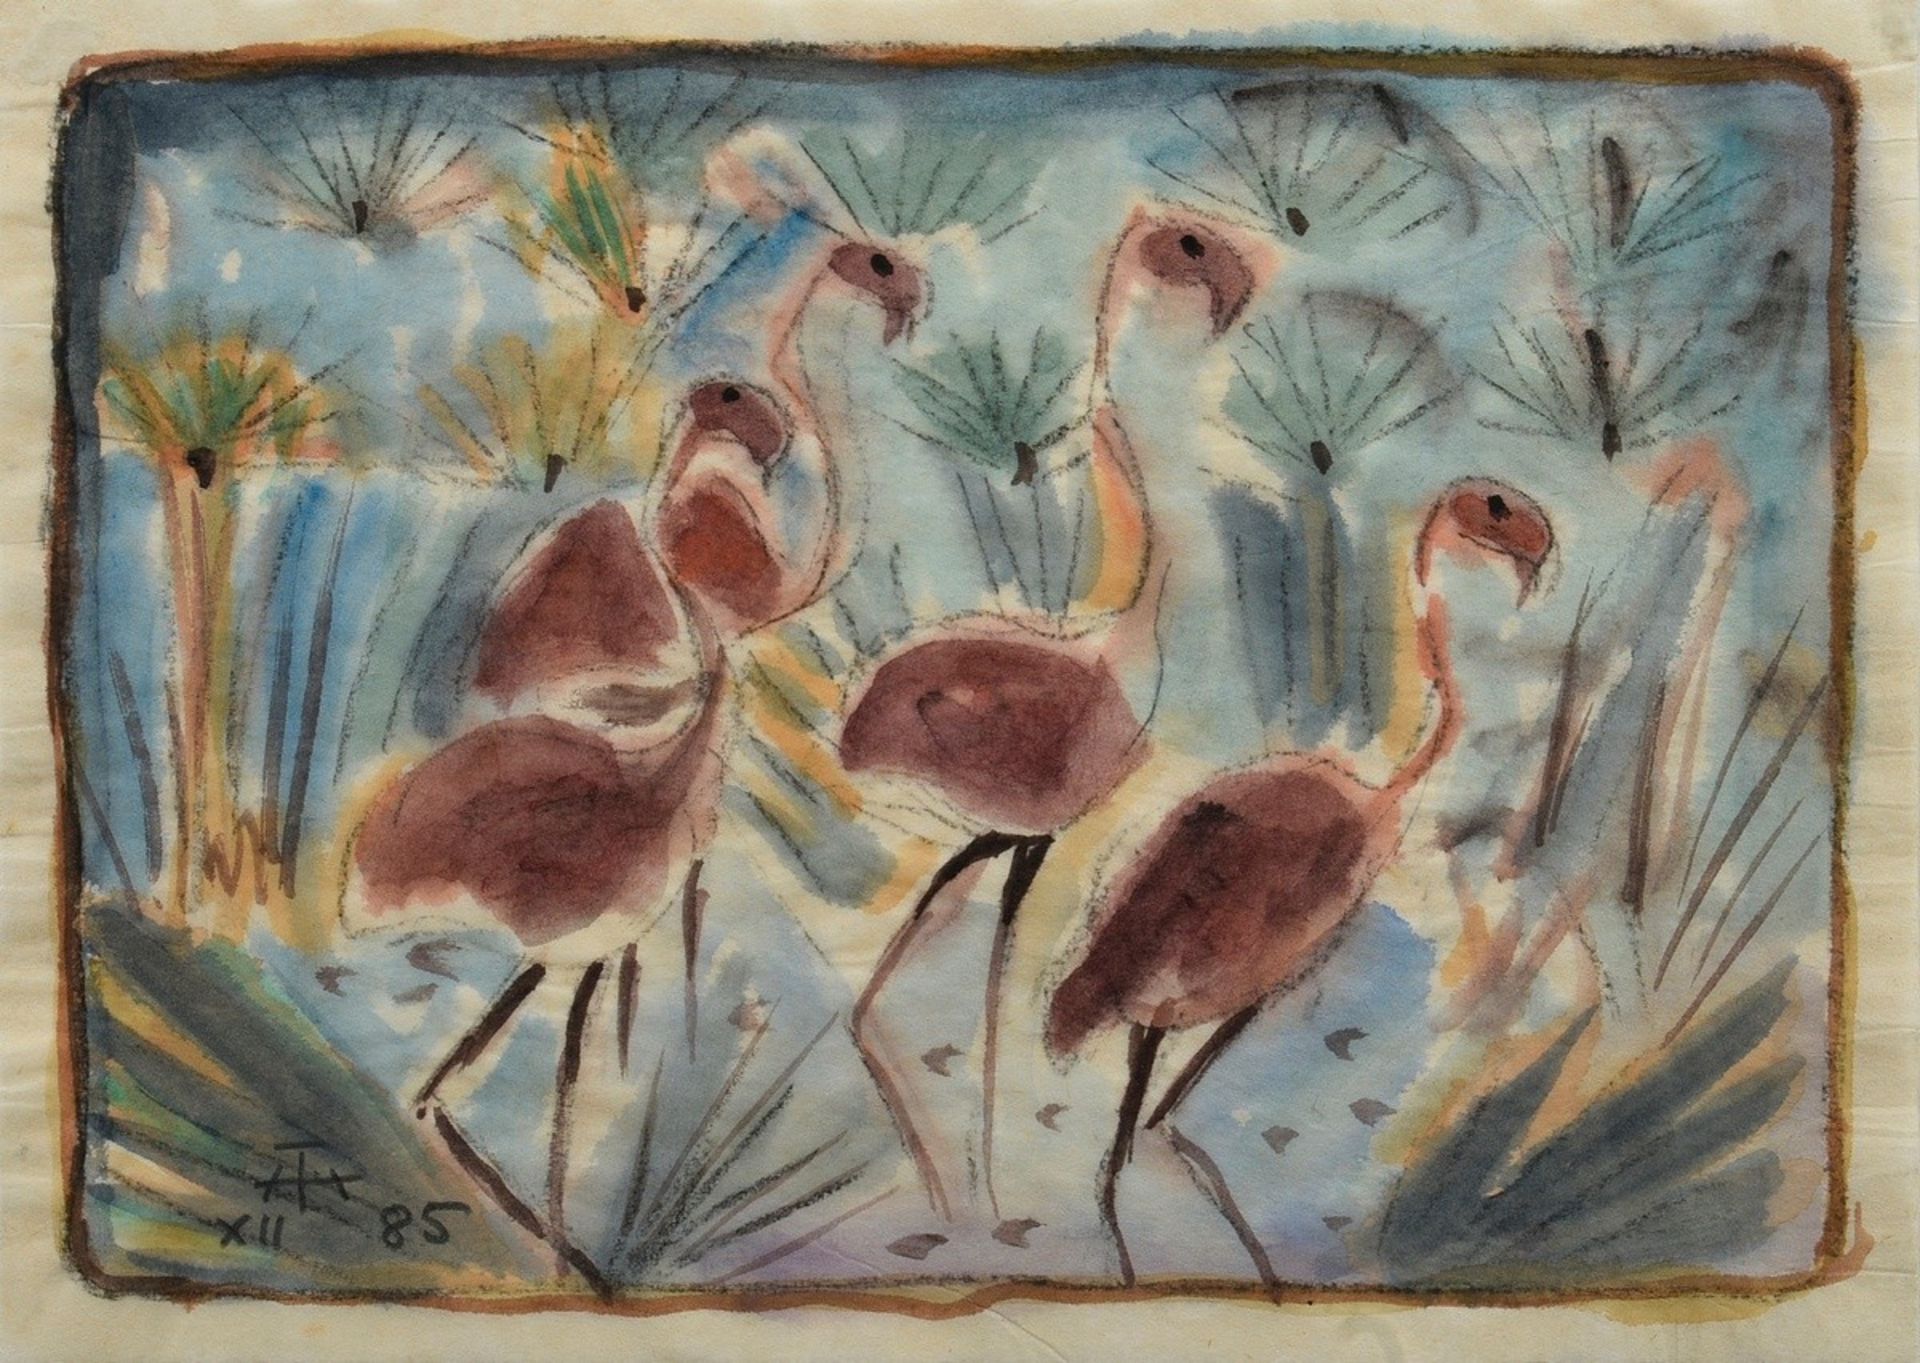 Theuerjahr, Heinz (1913-1991) "Flamingos" 1985, Kohle/Aquarell, u.l. monogr./dat., BM 23x32cm (m.R.